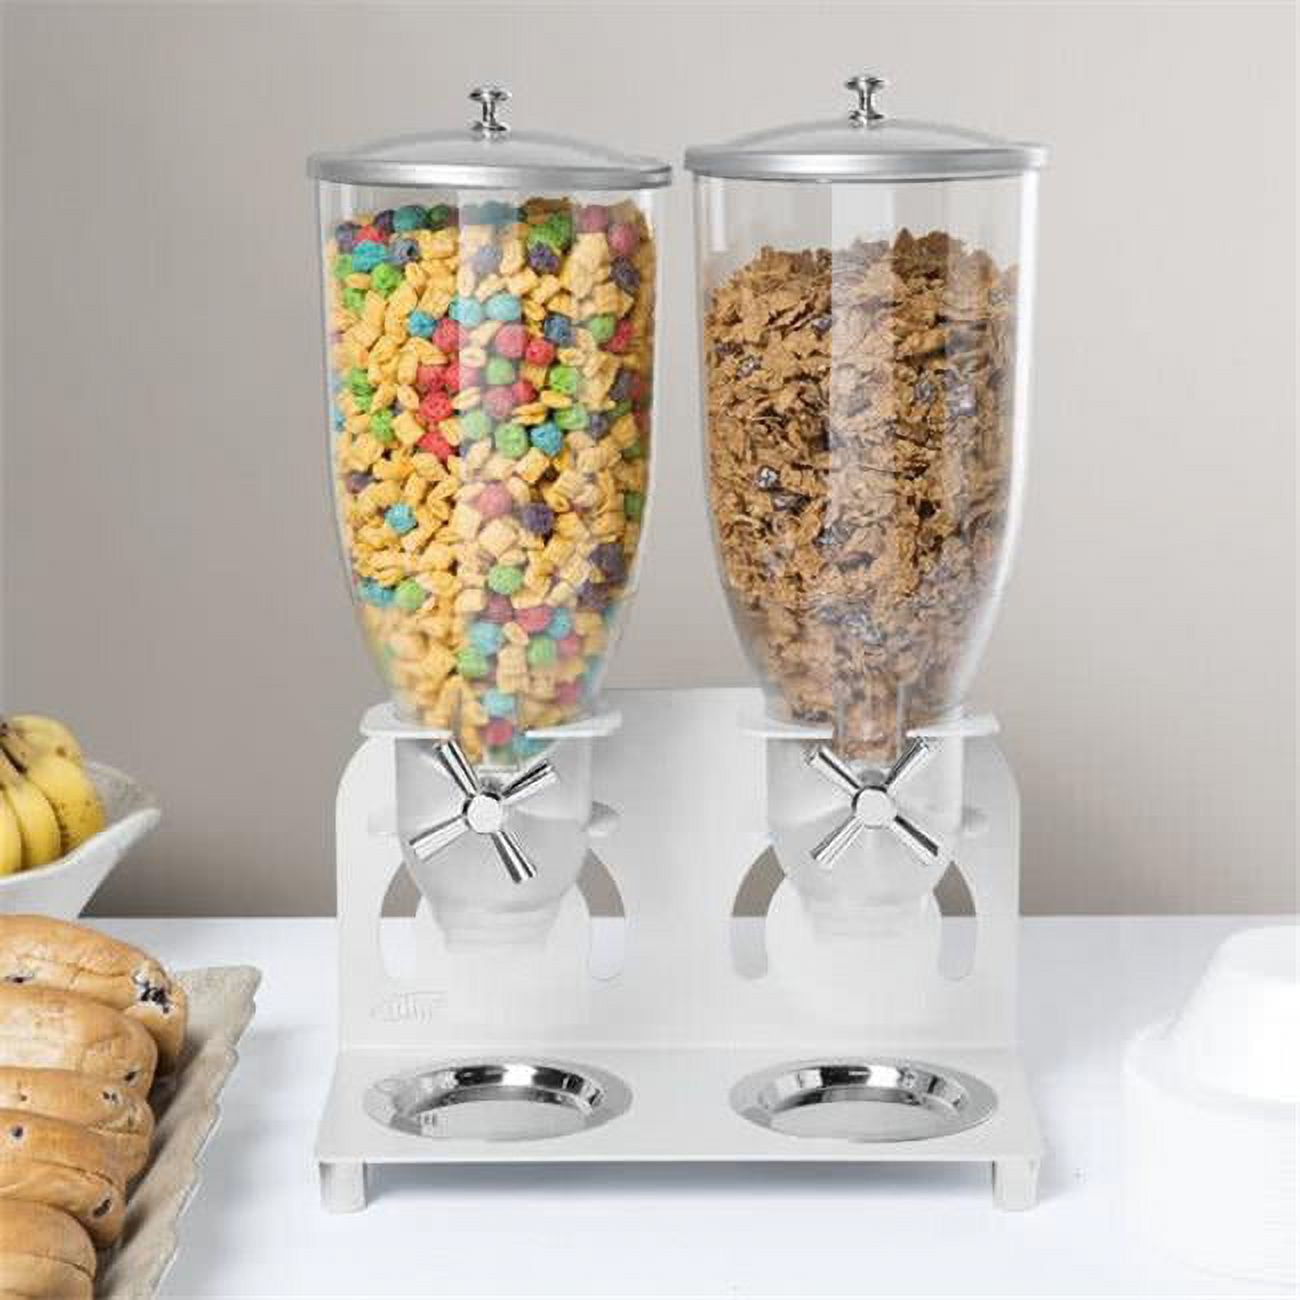 3510-2-39 2 Cylinder Cereal Dispenser - Silver